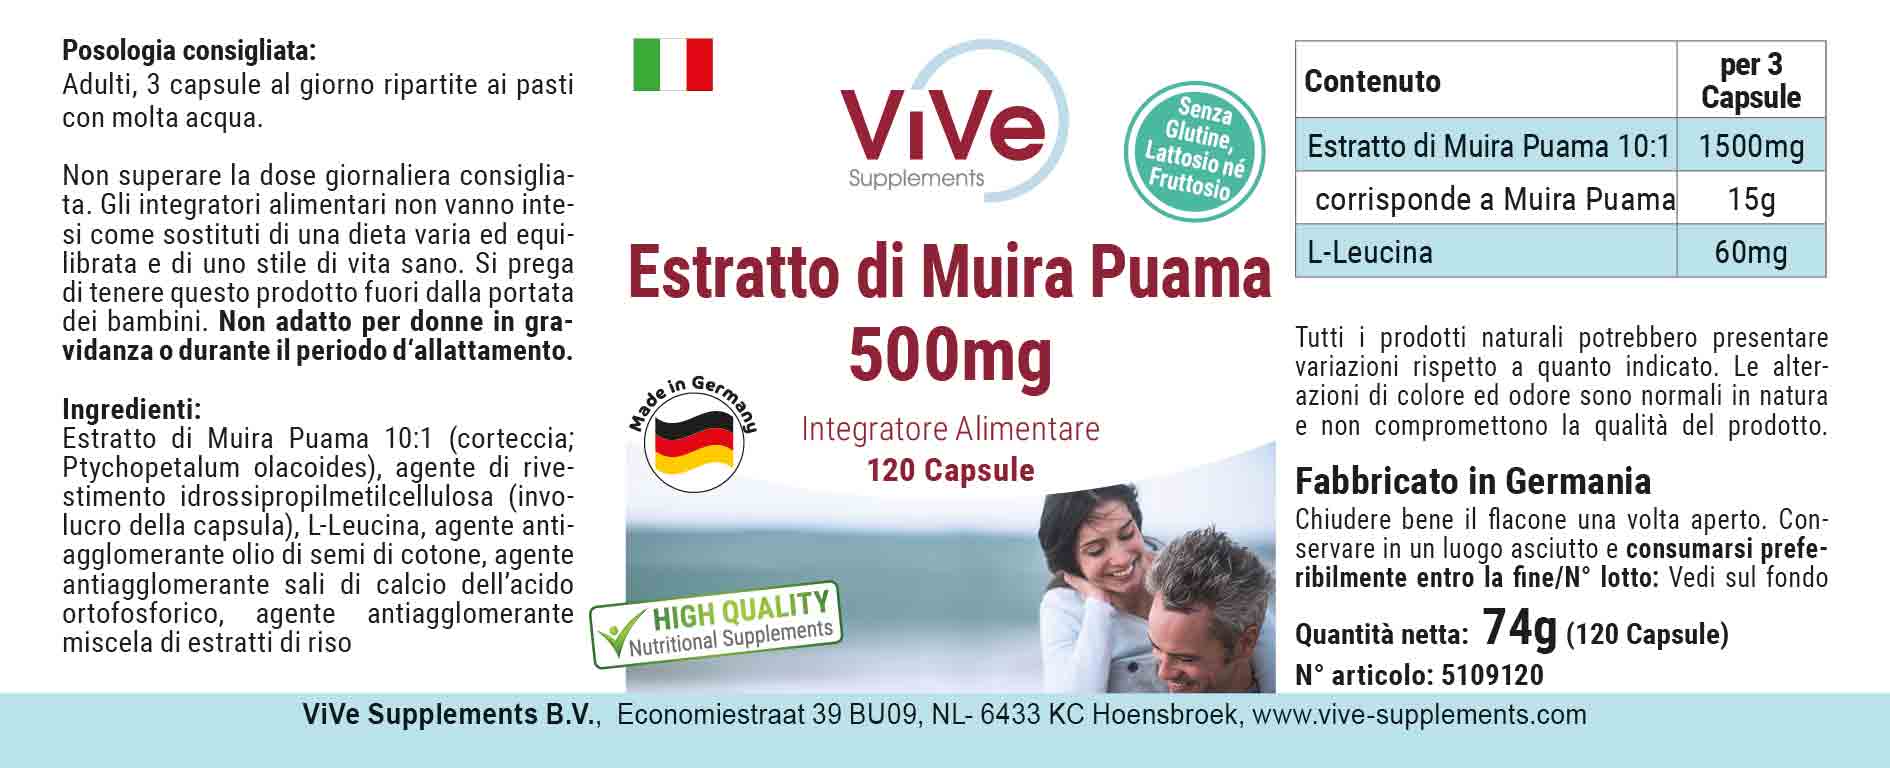 Muira Puama Extrakt 500mg